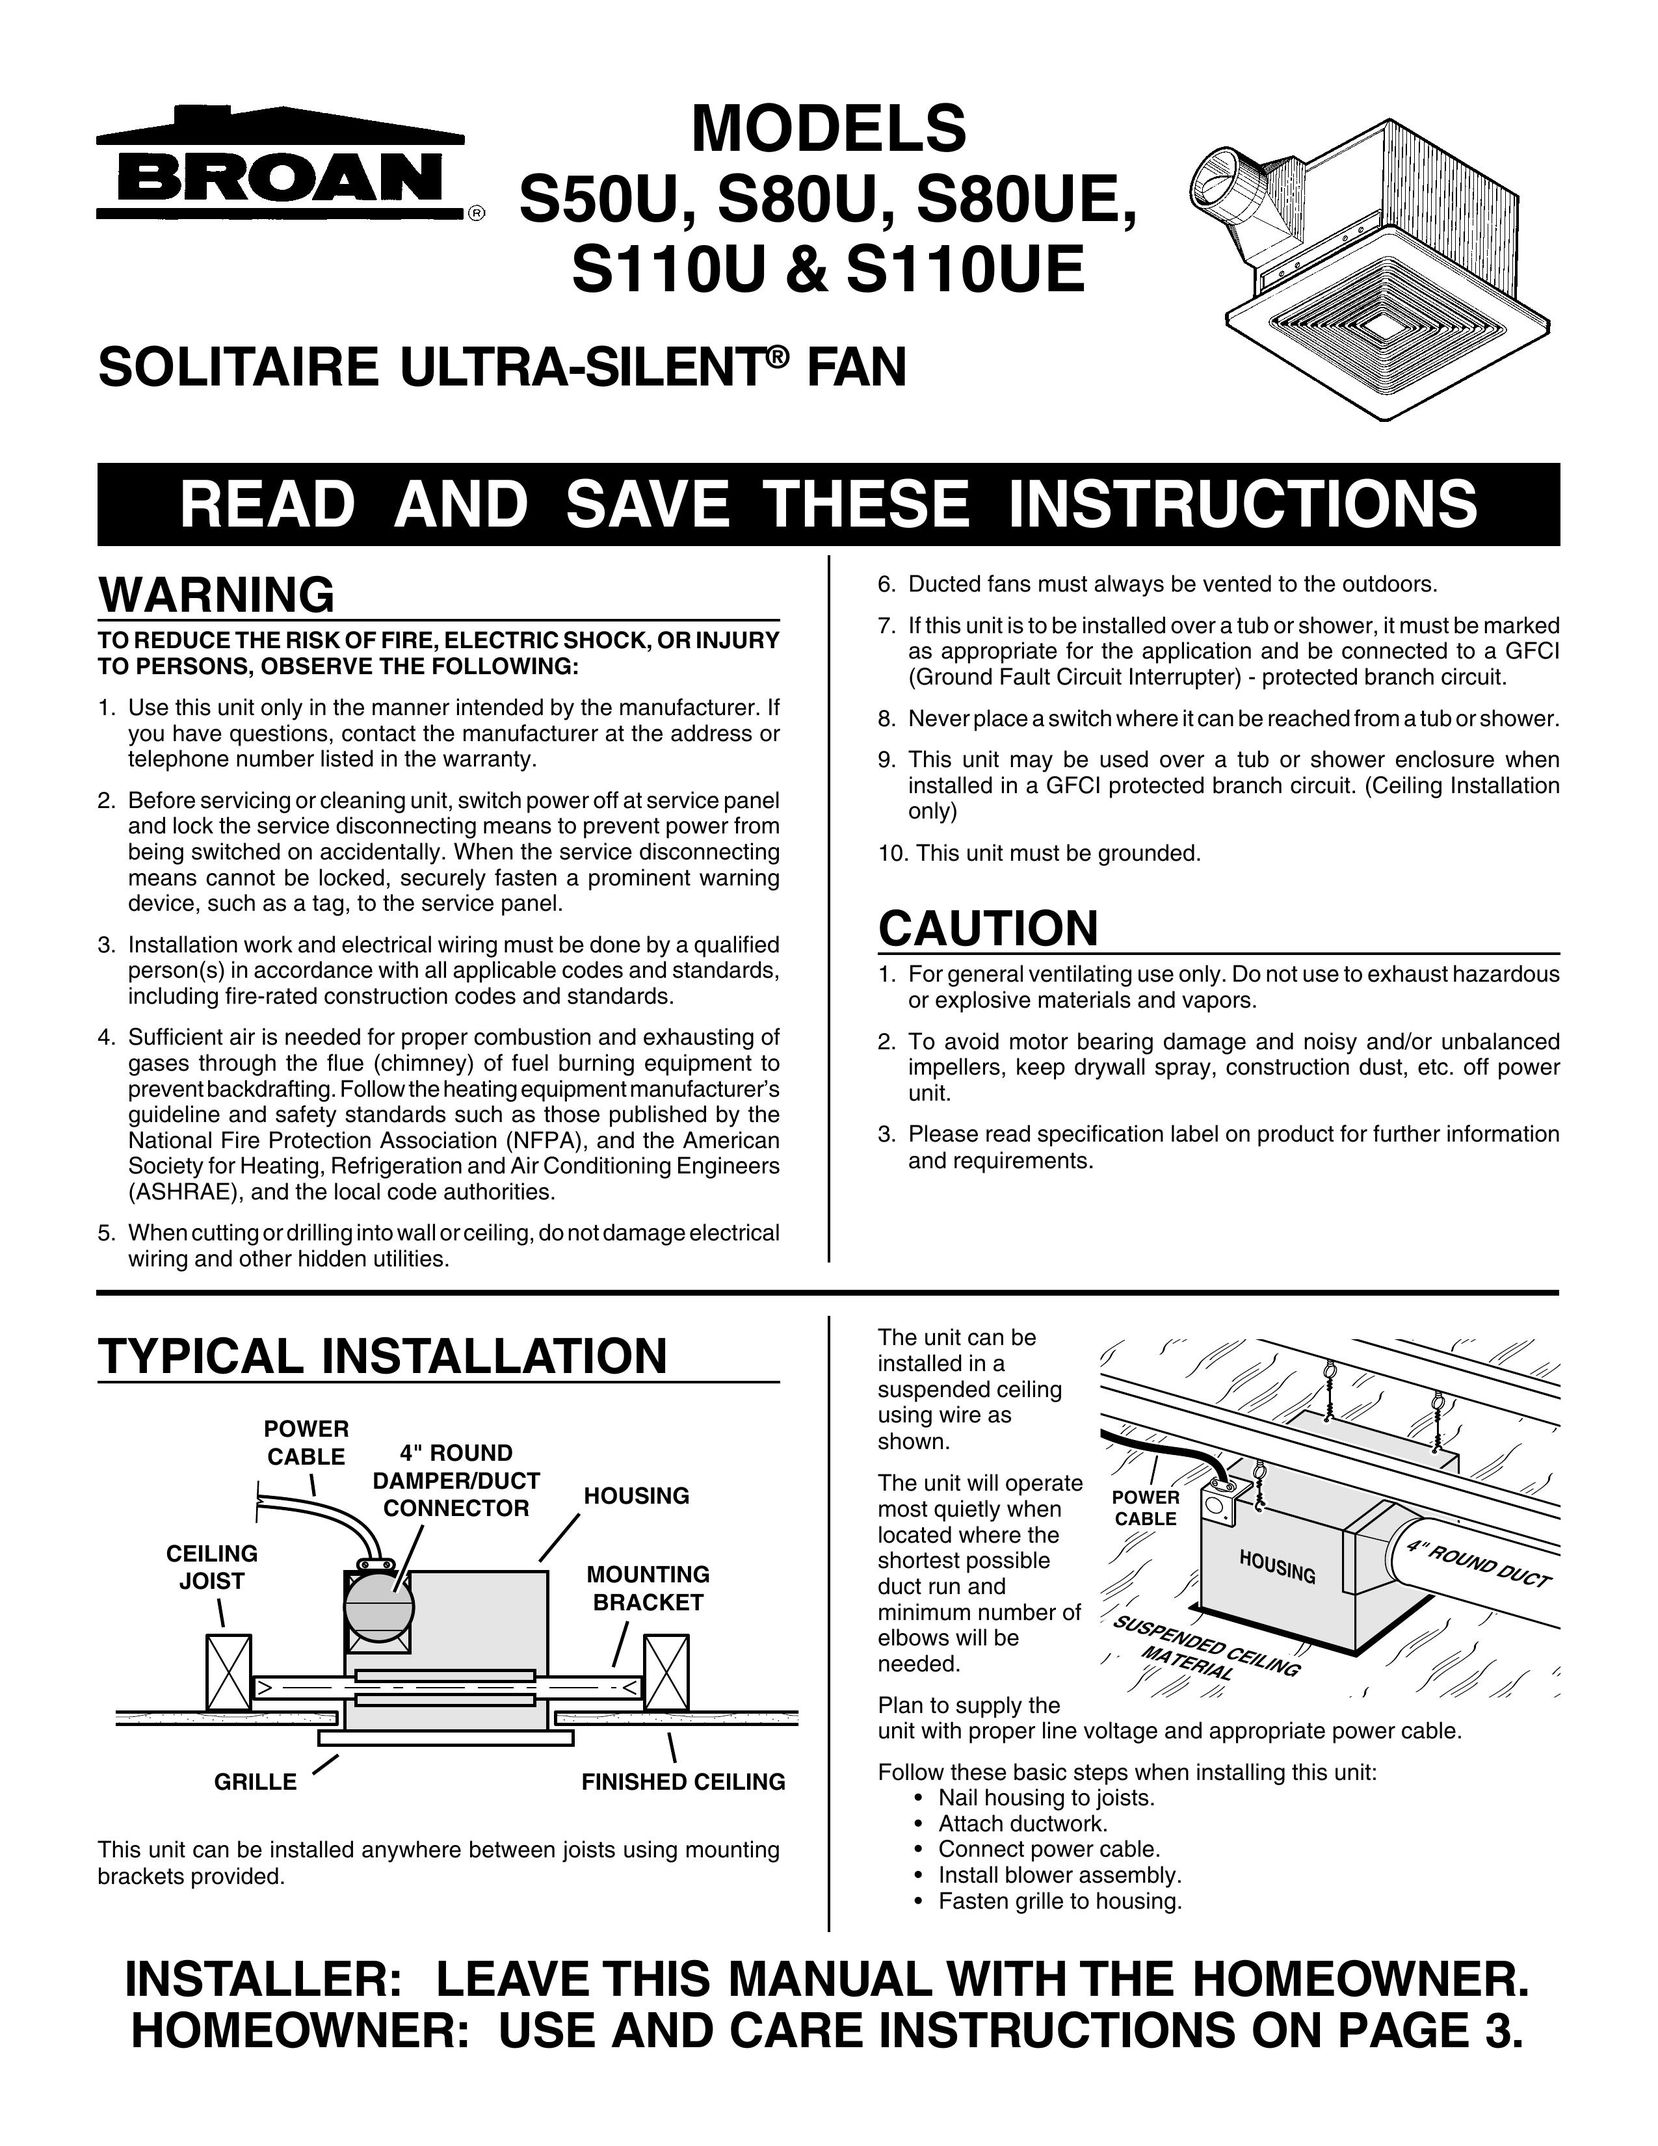 Broan S80UE Fan User Manual